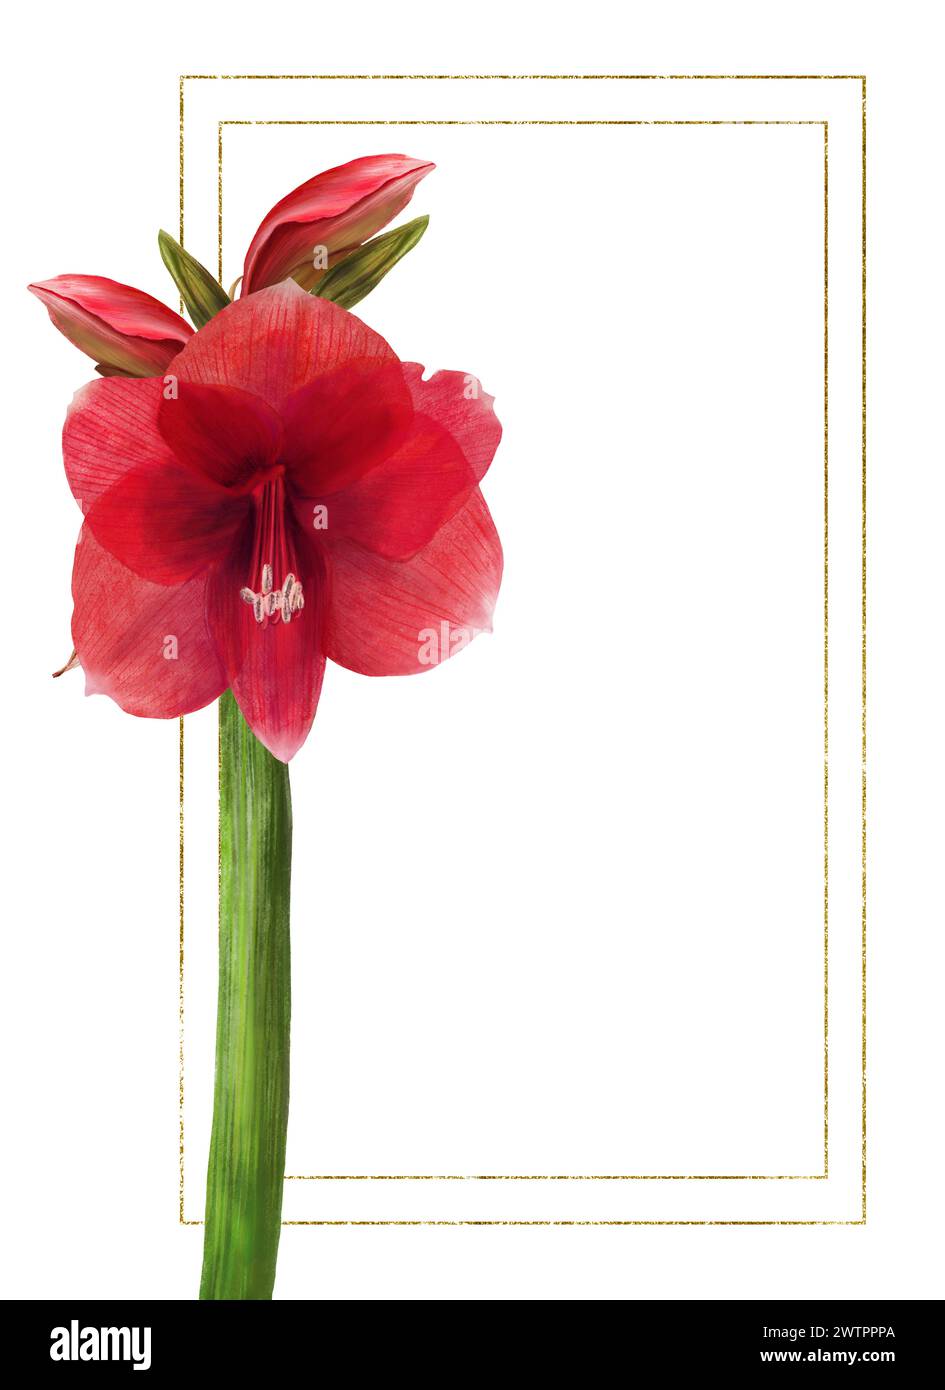 Rote amaryllis-Blüten, Stiele und Knospen mit goldenem Rahmen. Hippeastrum-Werksvorlage. Hand gezeichnet digitale Aquarellillustration Bloral Clipart für Stockfoto